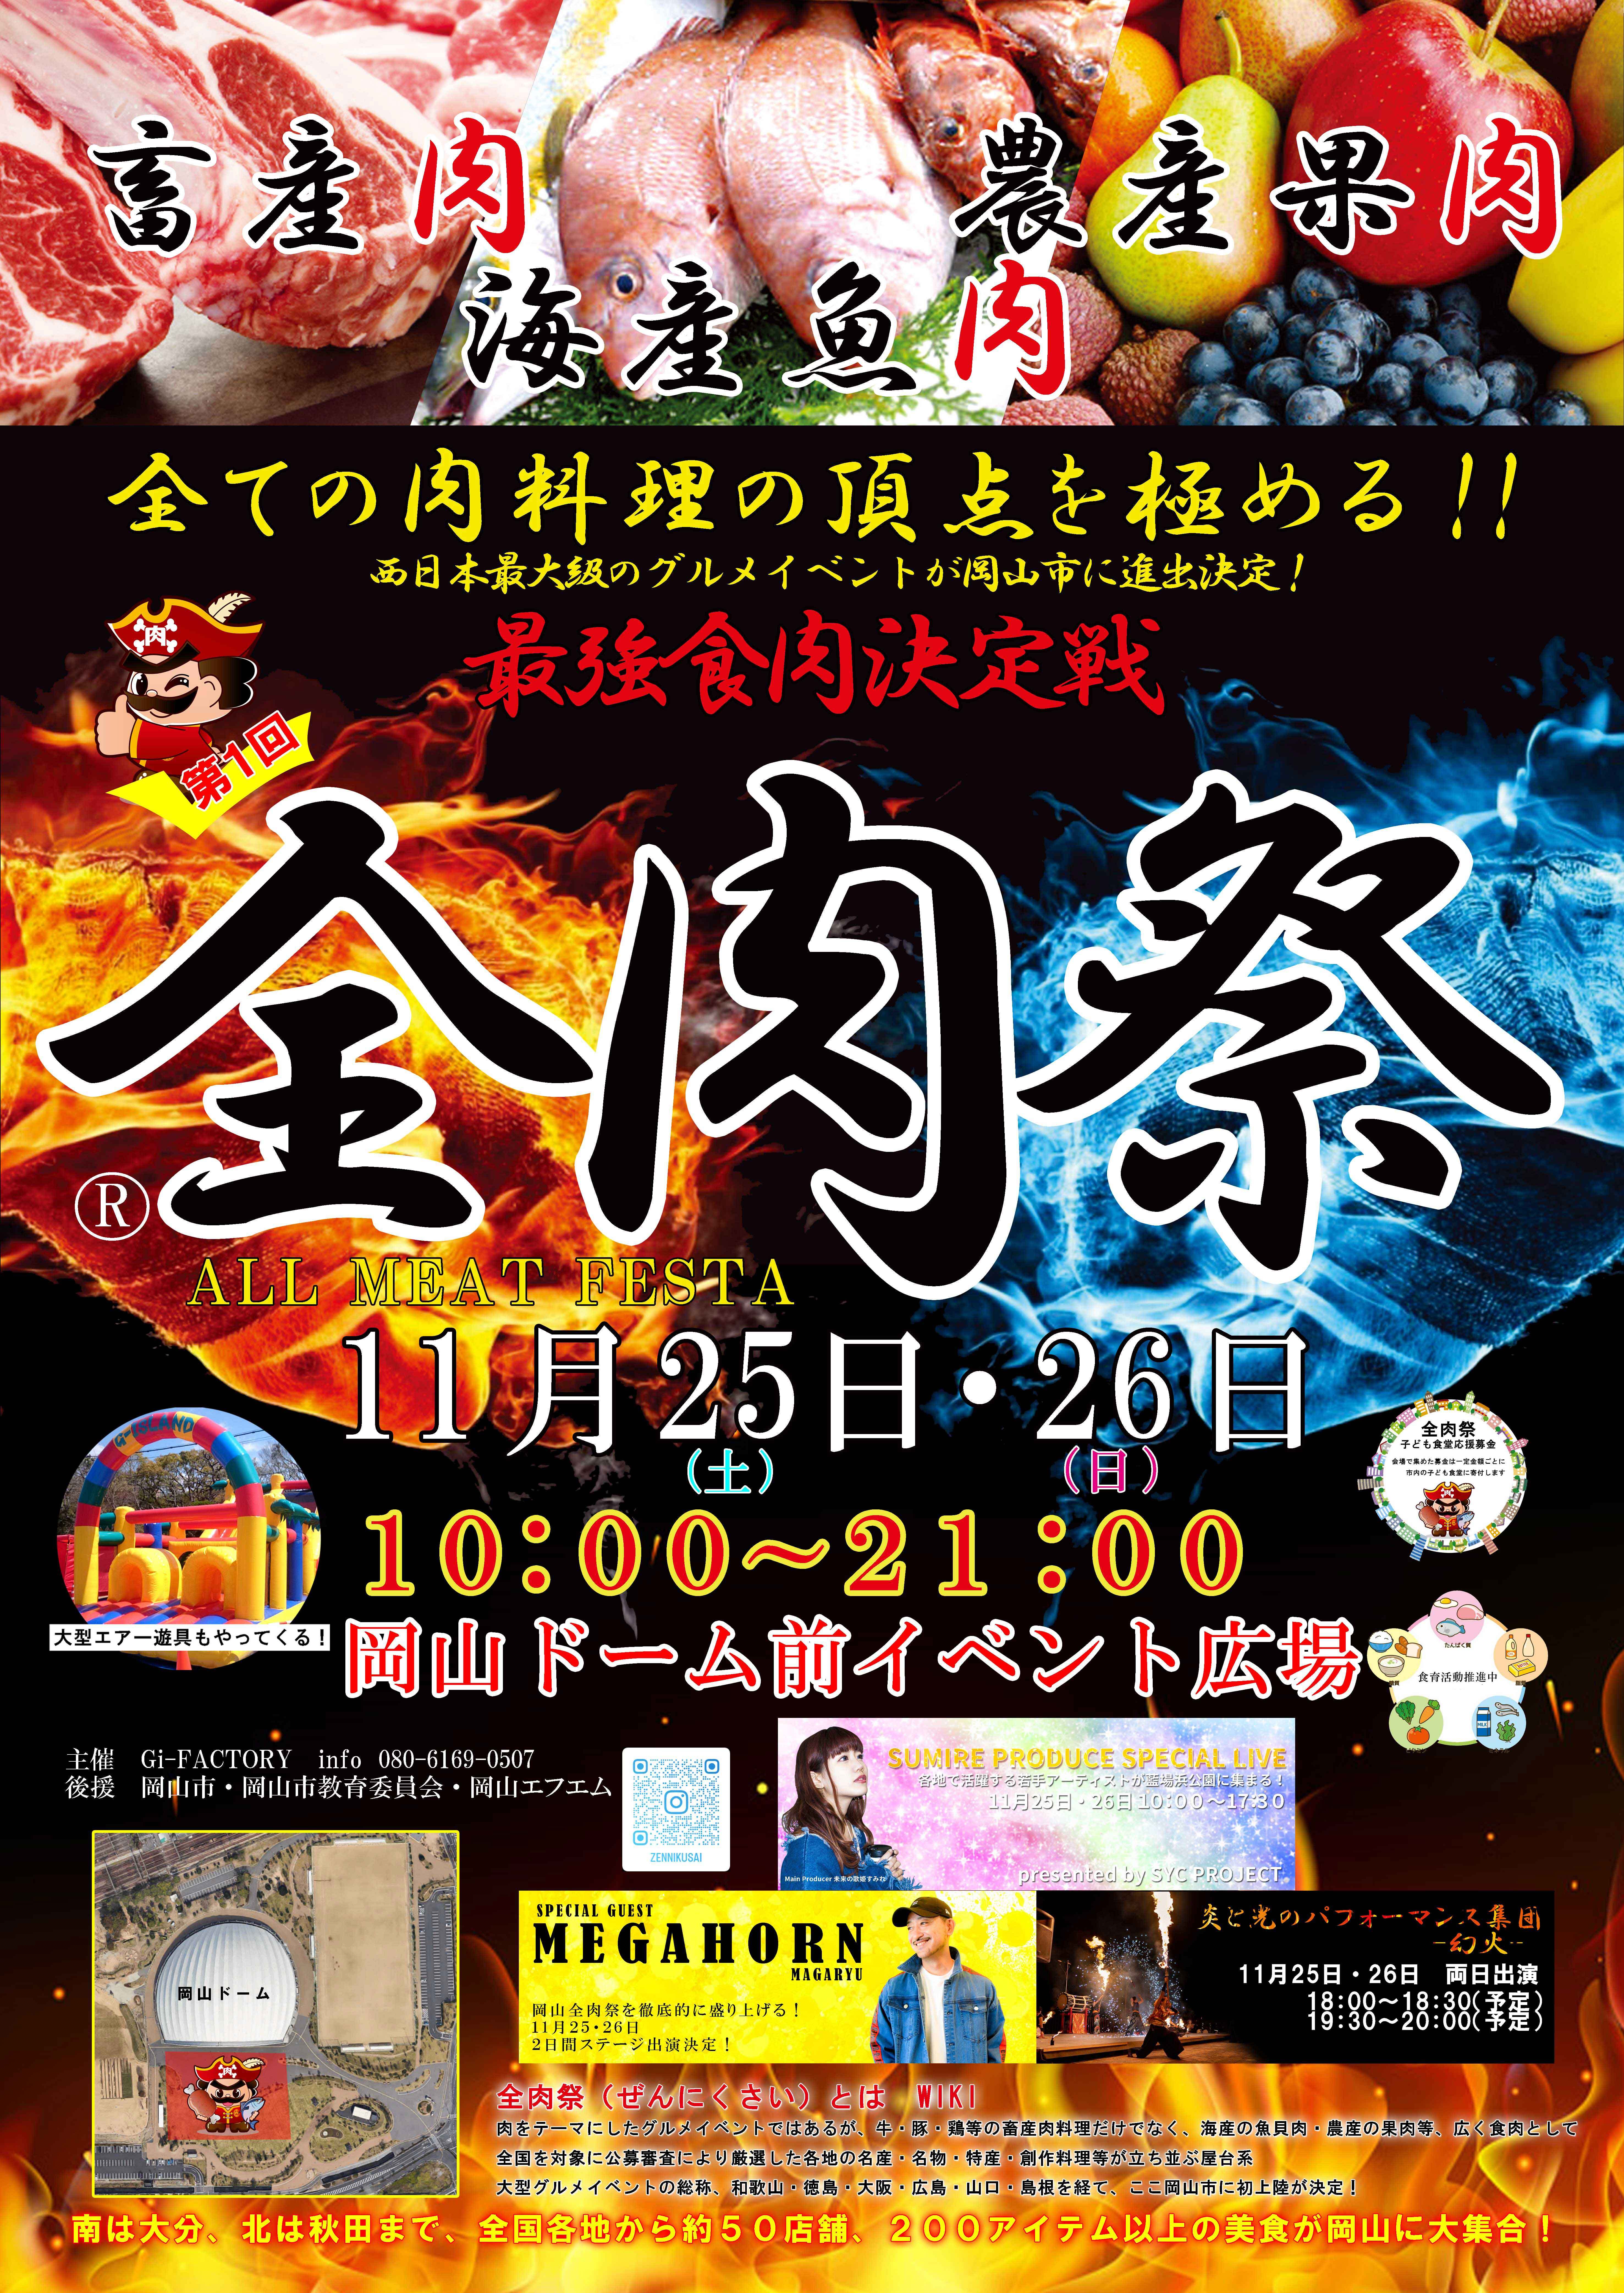 西日本最大級のグルメイベント「全肉祭」　
岡山県岡山市にて11/25～11/26に第1回開催決定！